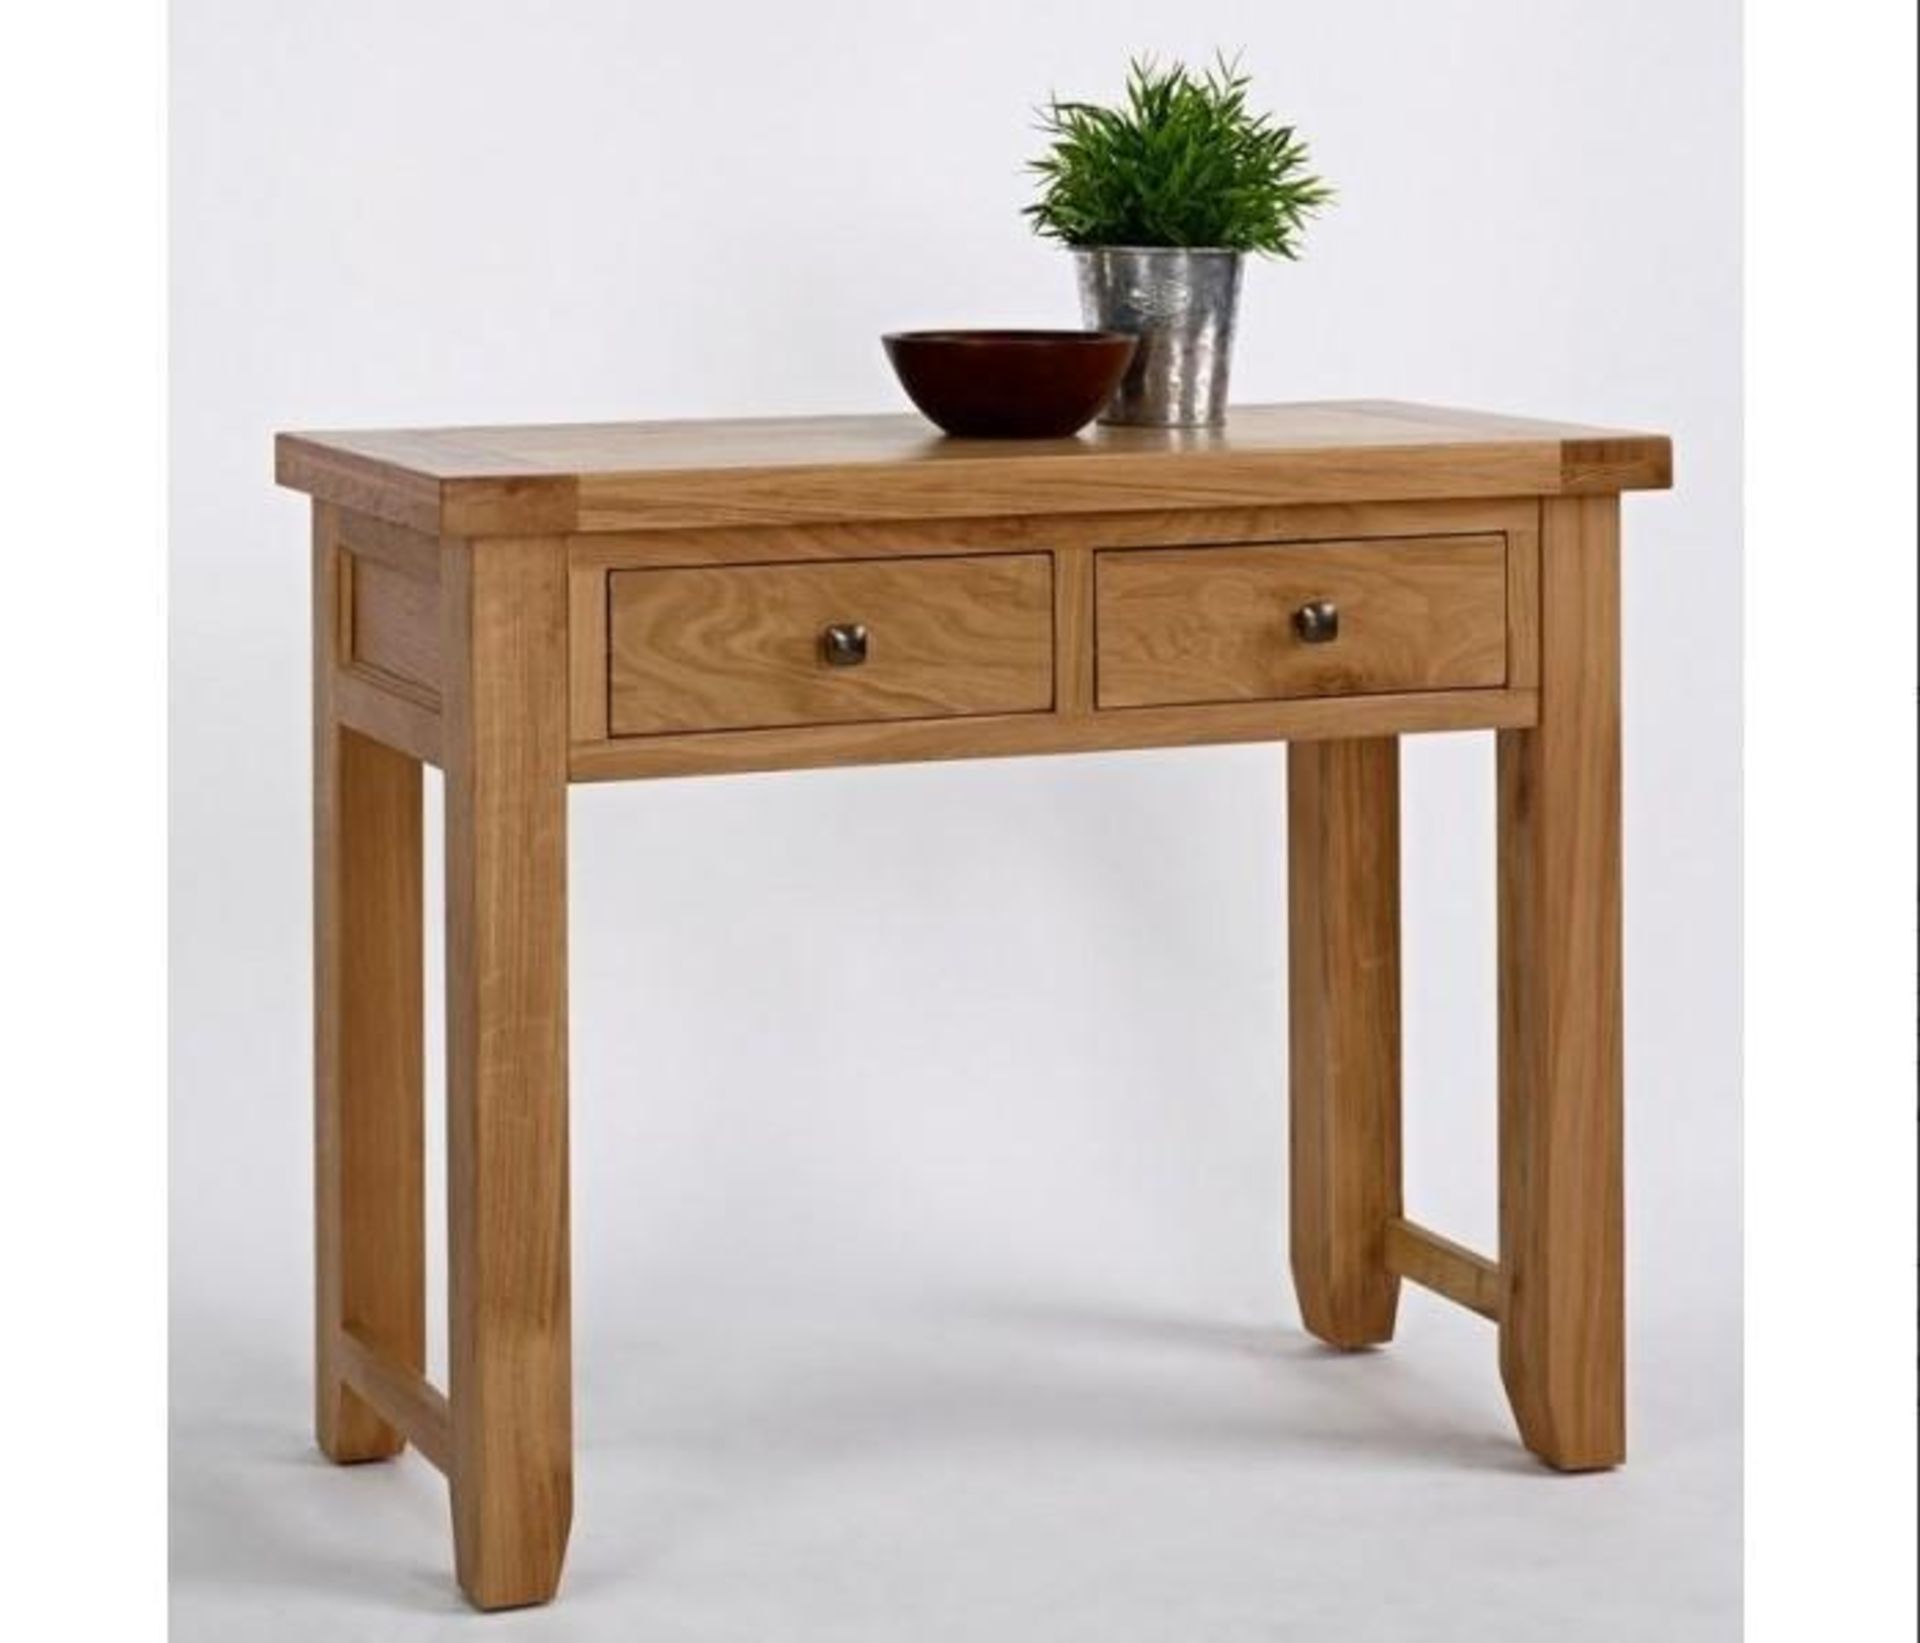 BRAND NEW & BOXED Devon oak console table